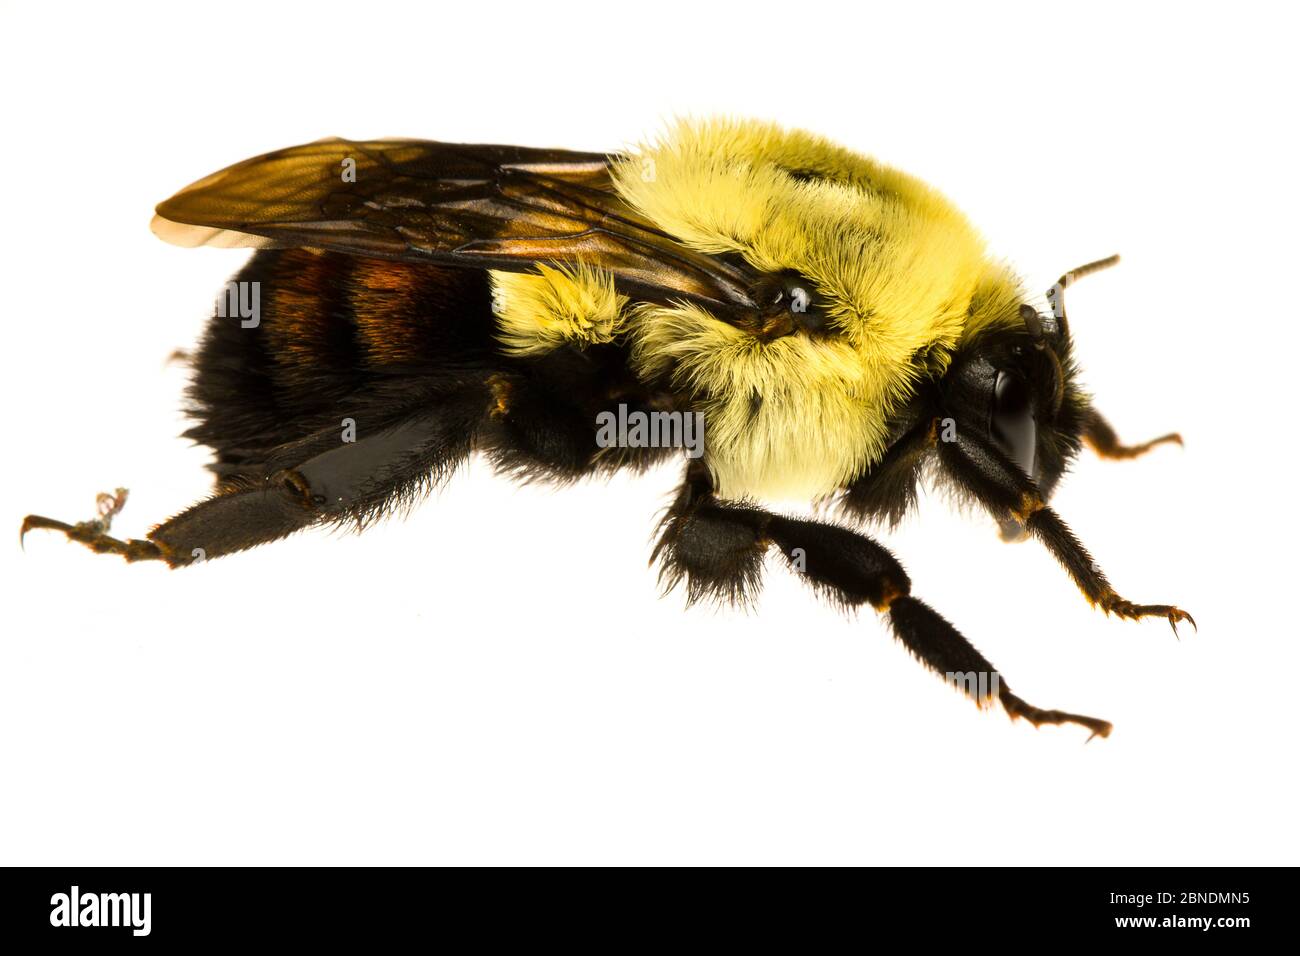 Bumblebee de l'est commun (Bombus impatiens) Oxford, Mississippi, États-Unis, avril. Meetyourneighbors.net projet Banque D'Images